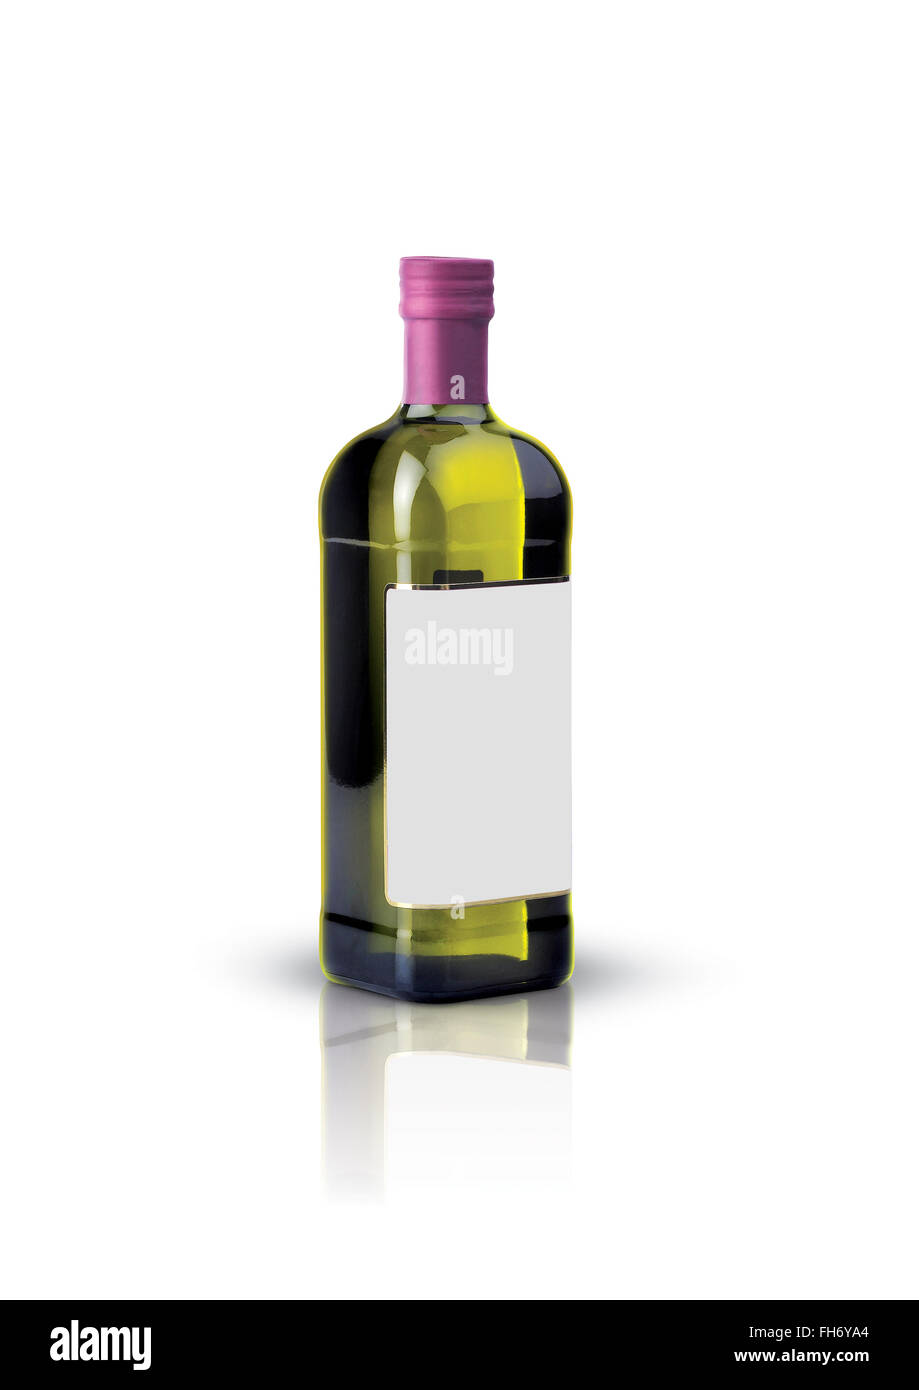 Senza etichetta bottiglia vuota per la progettazione di olio di oliva, olio di semi di uva,l'aceto,vino etichetta isolati su sfondo bianco,progettazione grafica Foto Stock